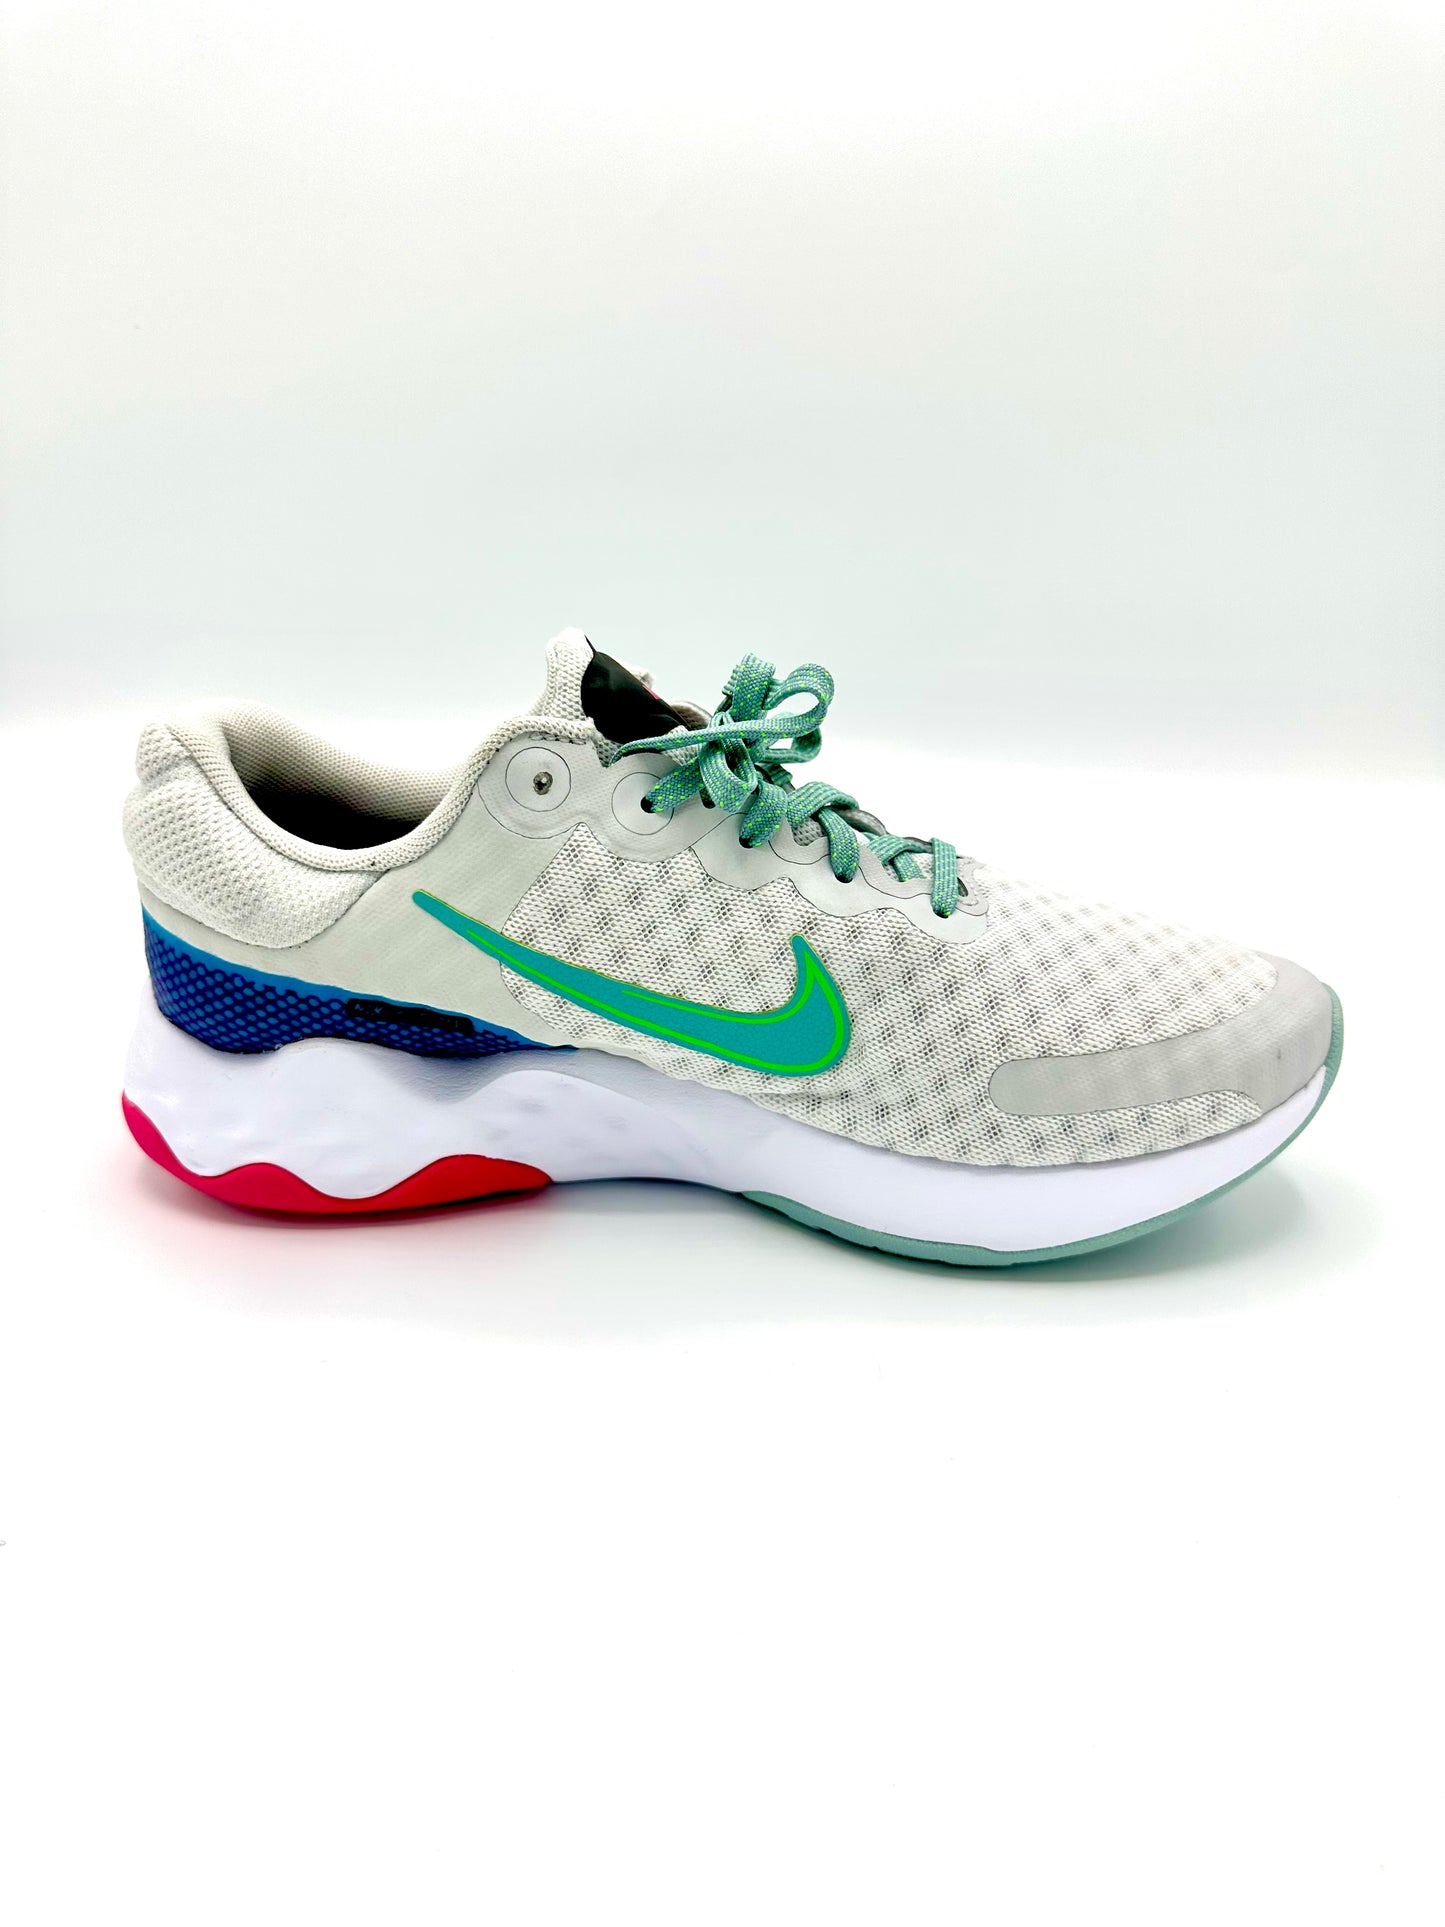 Nike Women's Renew Ride 3 Running Shoes